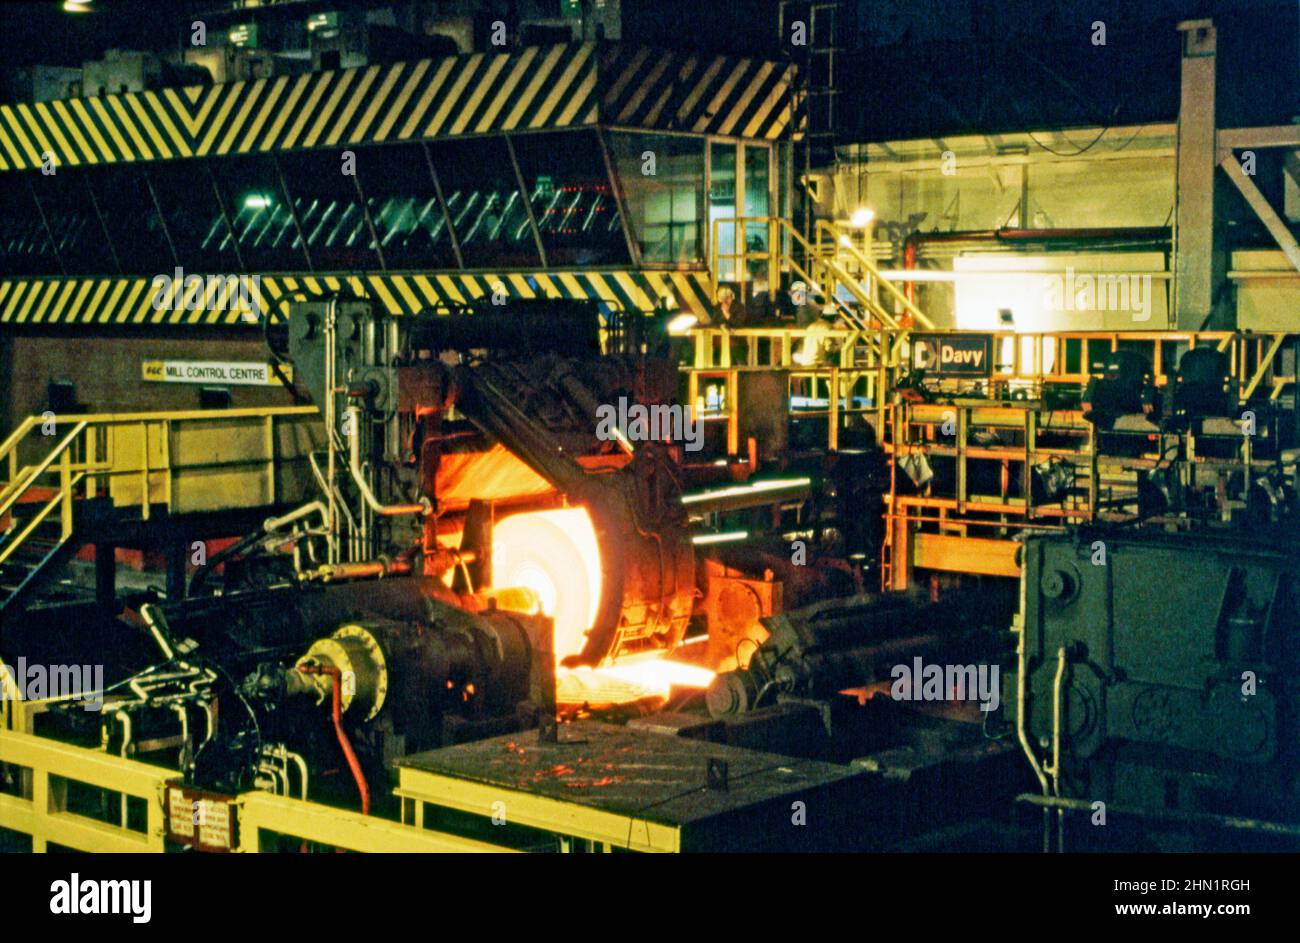 Una vista de mediados de 1980s dentro de Port Talbot Steelworks, una planta integrada de producción de acero en Port Talbot, West Glamorgan, Gales, Reino Unido. Dentro de la fábrica, se está desplegando chapa de acero caliente en la línea de producción. El Centro de Control de la Fábrica está en segundo plano. Esta imagen es de una transparencia de color vintage: Una fotografía vintage 1980s. Foto de stock